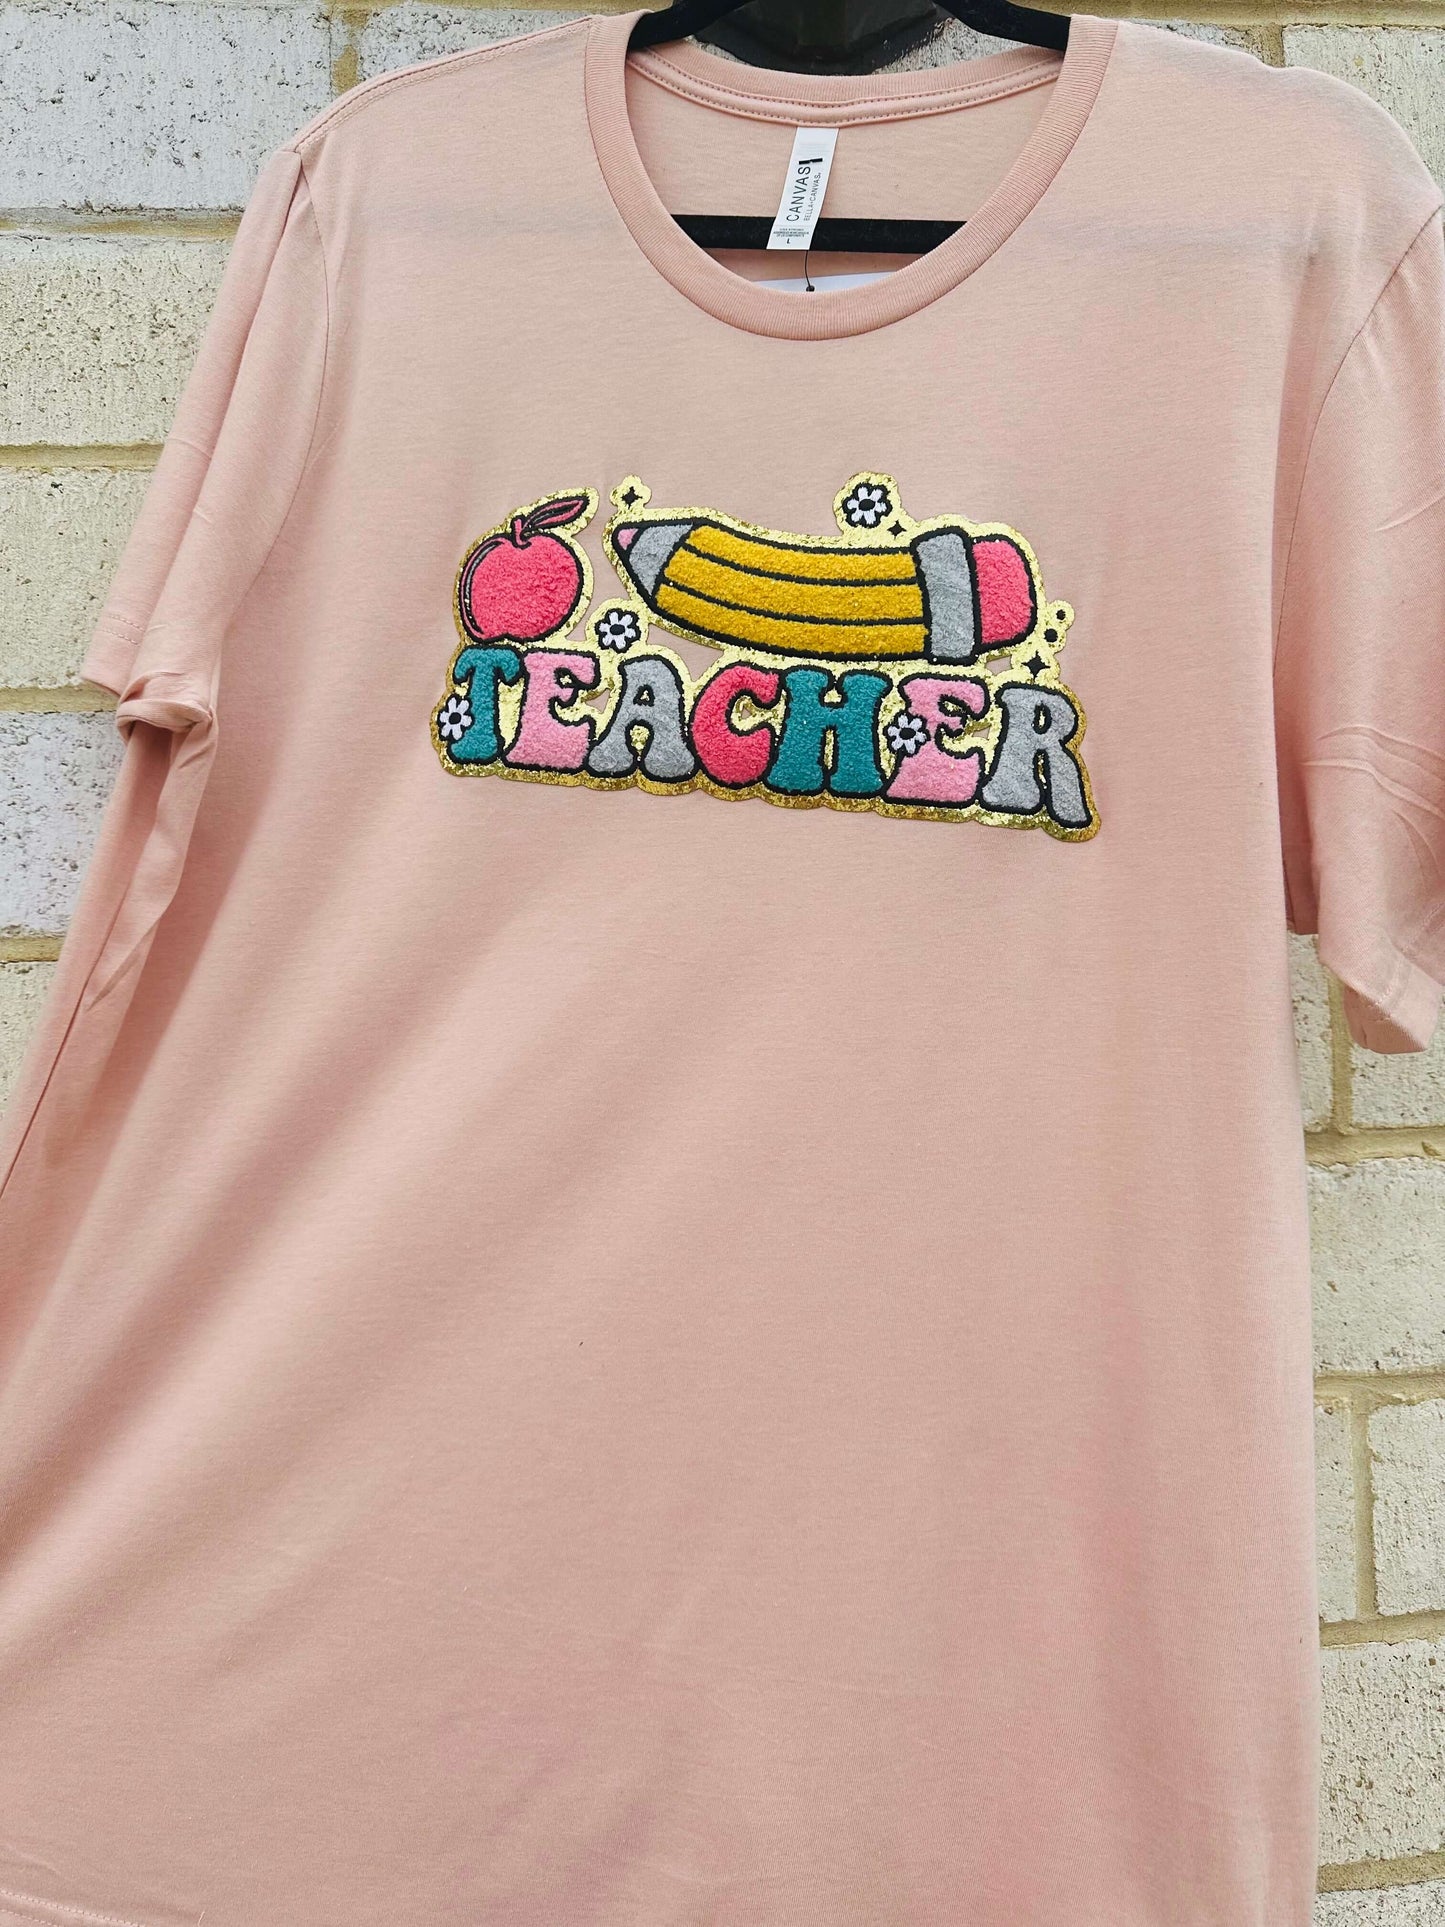 What A Teacher! T-Shirt